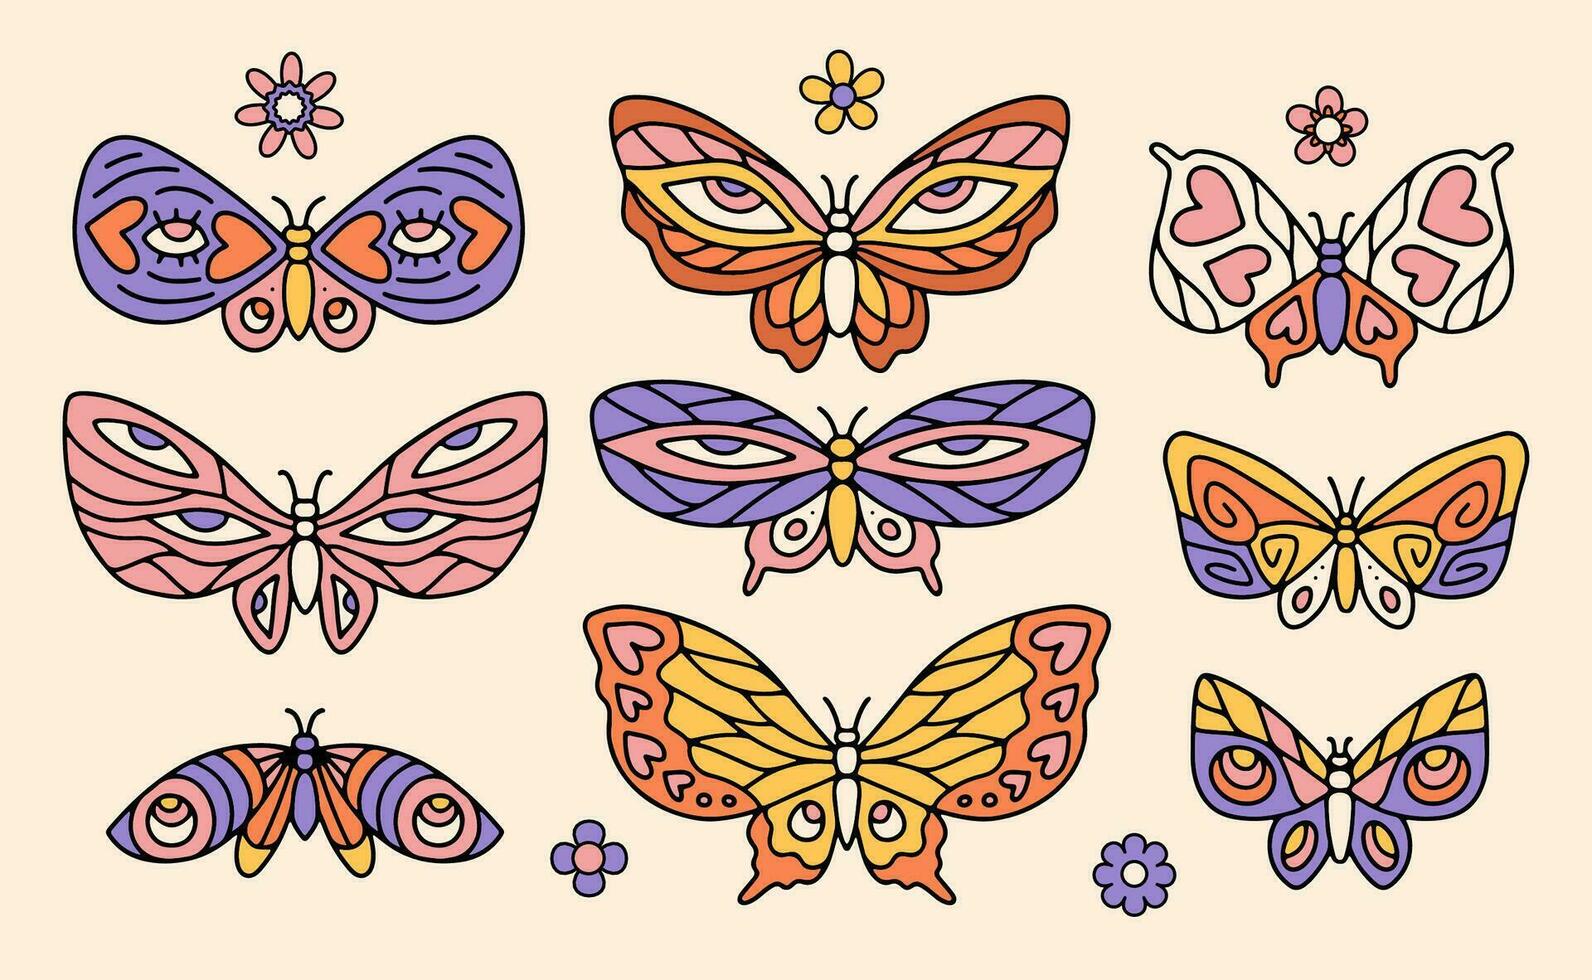 maravilloso mariposa, margarita flor colocar. hippie 60s 70s contorno elementos. floral romántico pegatinas en de moda psicodélico retro estilo lineal mano dibujado vector ilustración.